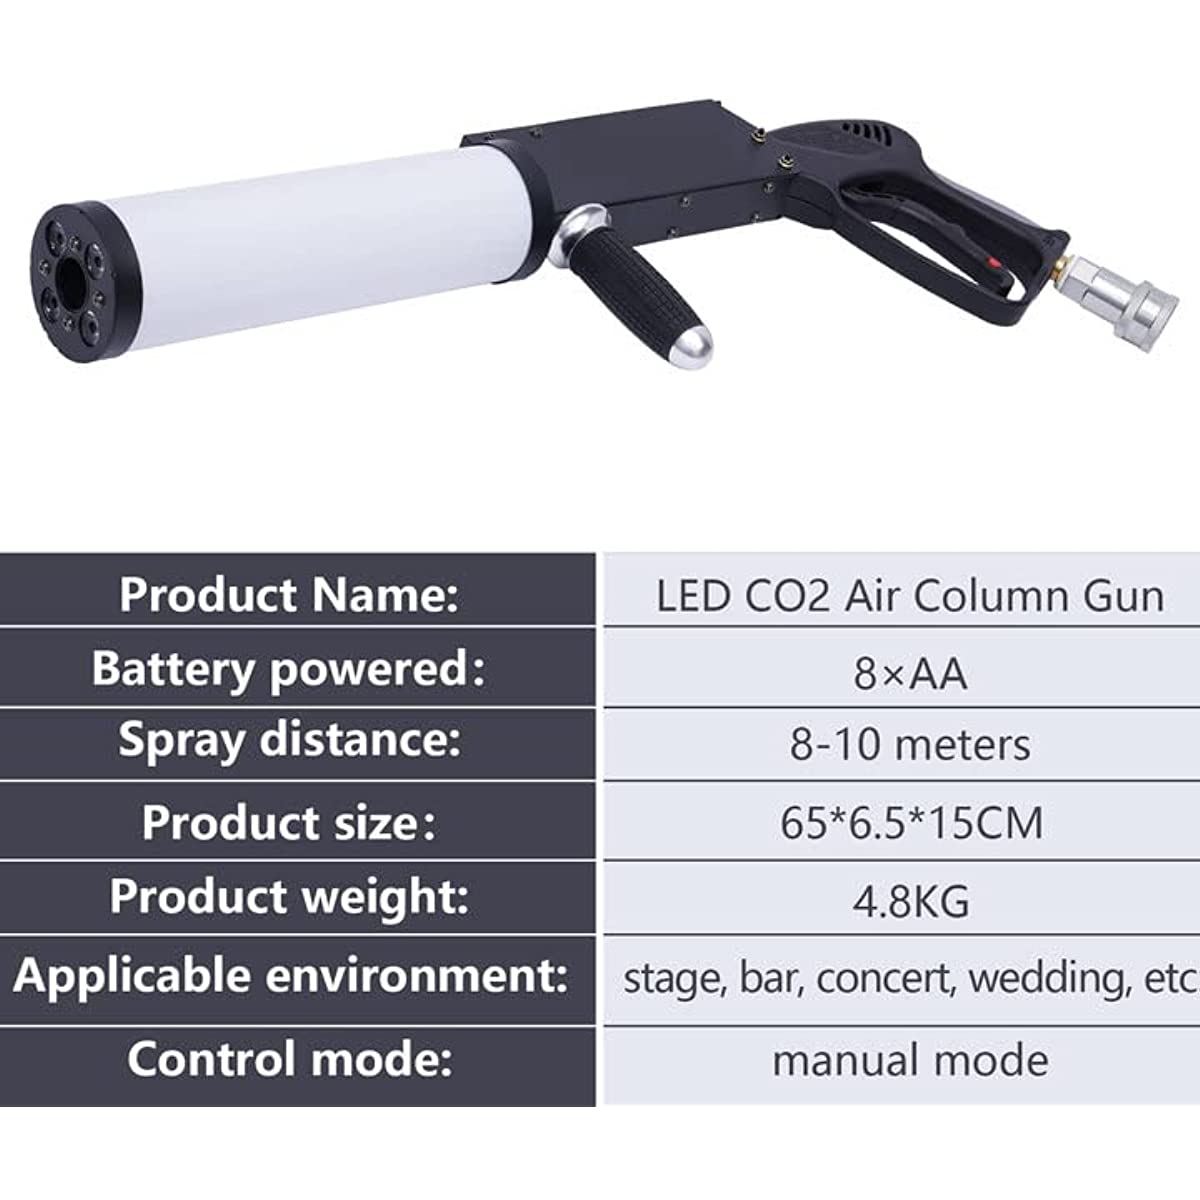 LED CO2 qurol (11)